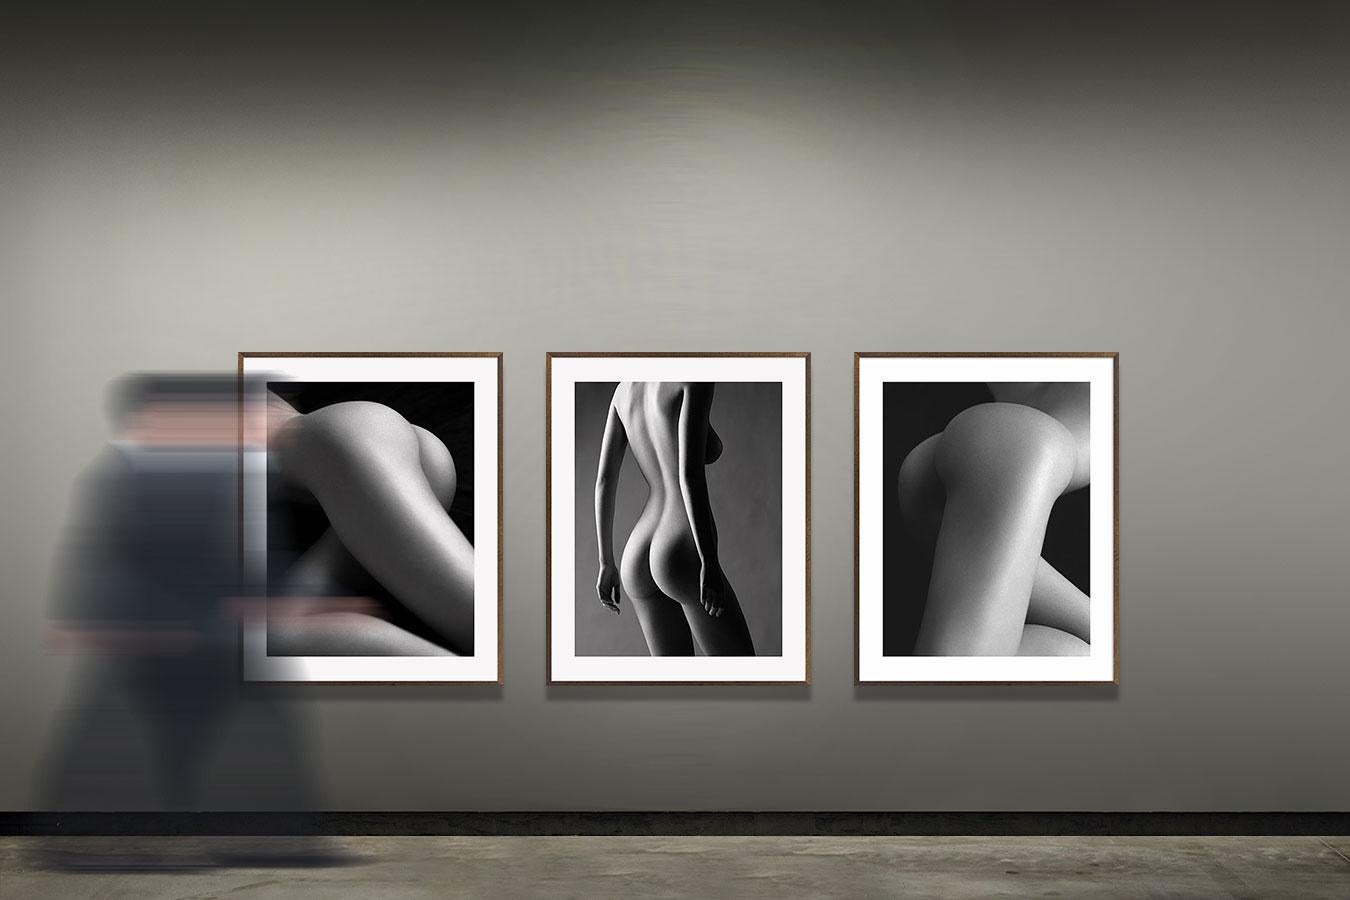 Ausstellungsraum, Tyra Banks II, Mailand (Schwarz), Black and White Photograph, von Bruno Bisang